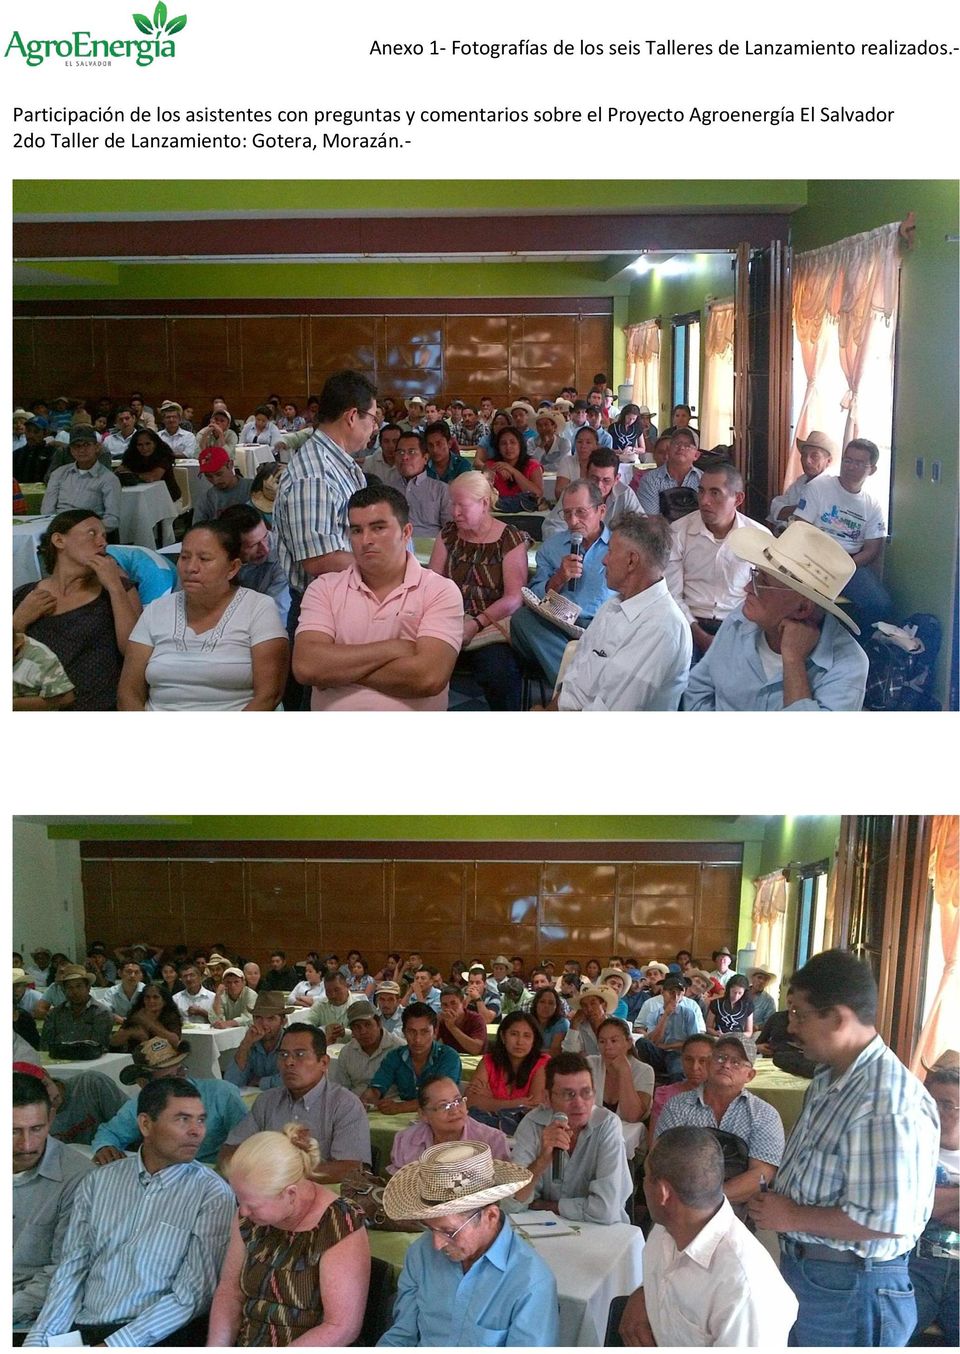 Proyecto Agroenergía El Salvador 2do